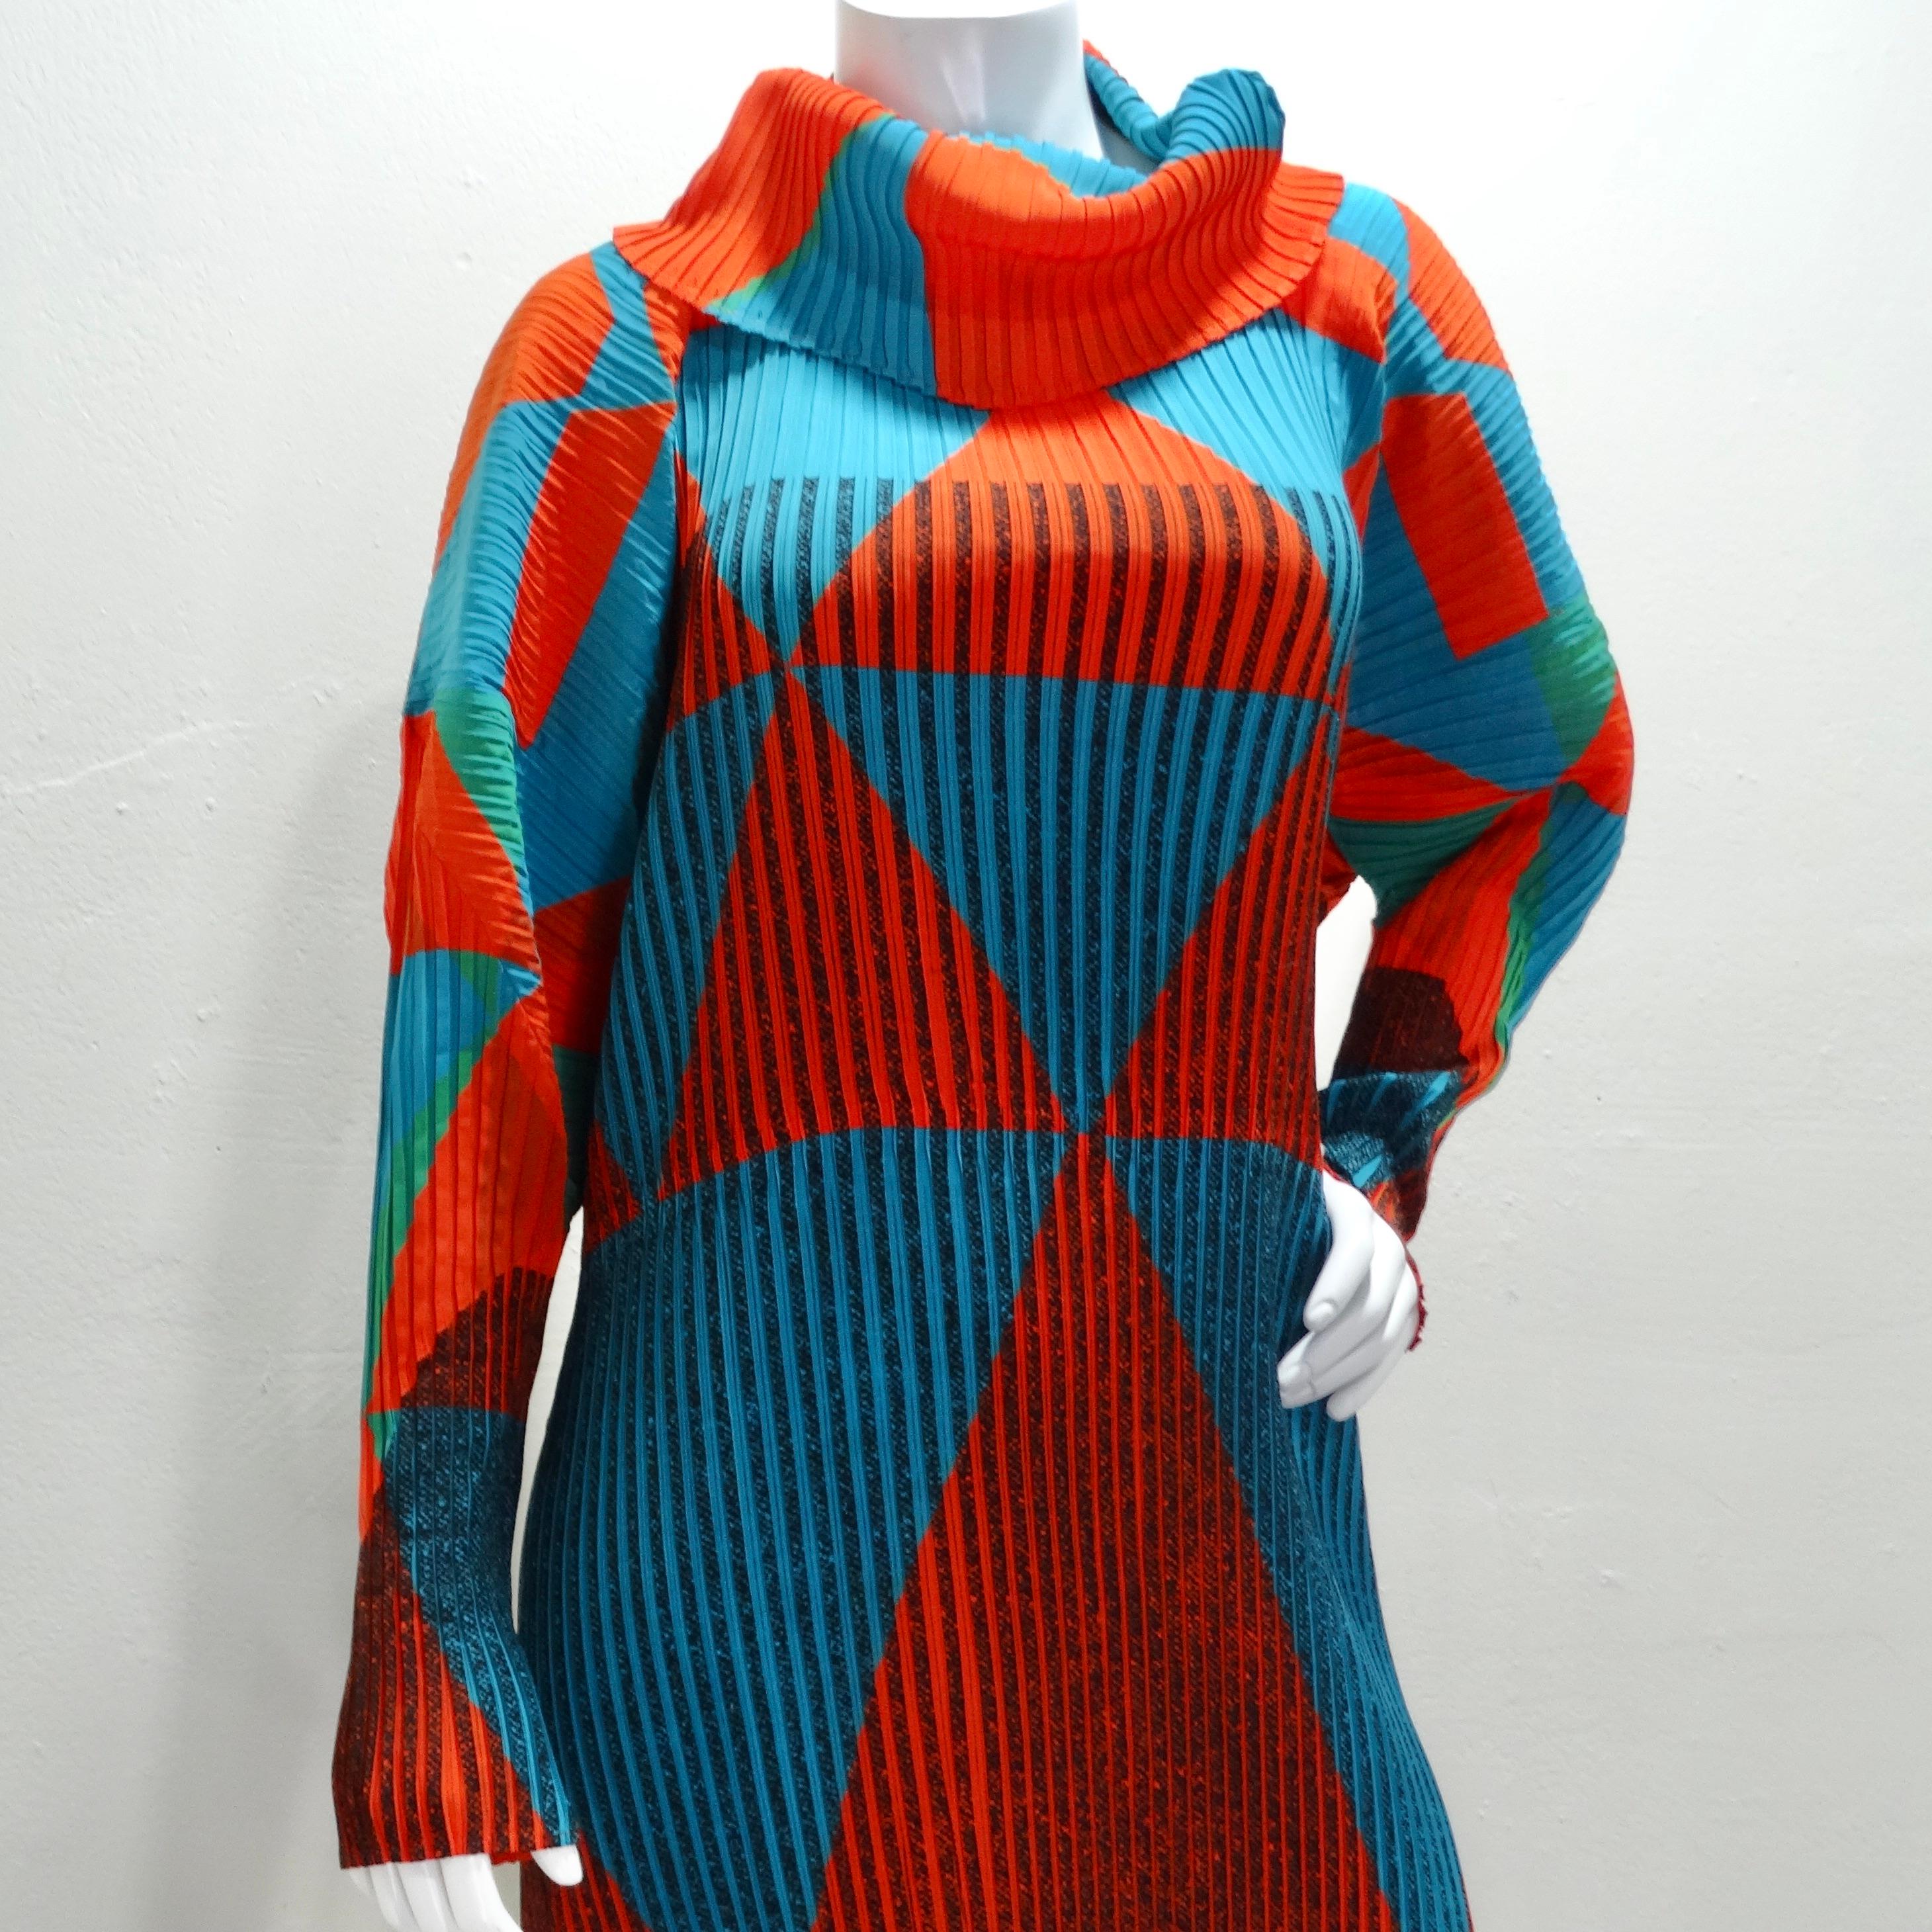 La robe à col roulé plissée des années 1990 Issey Miyake Orange Bleu est une pièce étonnante et rare qui capture l'essence de l'approche innovante d'Issey Miyake en matière de plis et de textiles. Cette robe mi-longue est dotée de manches longues et